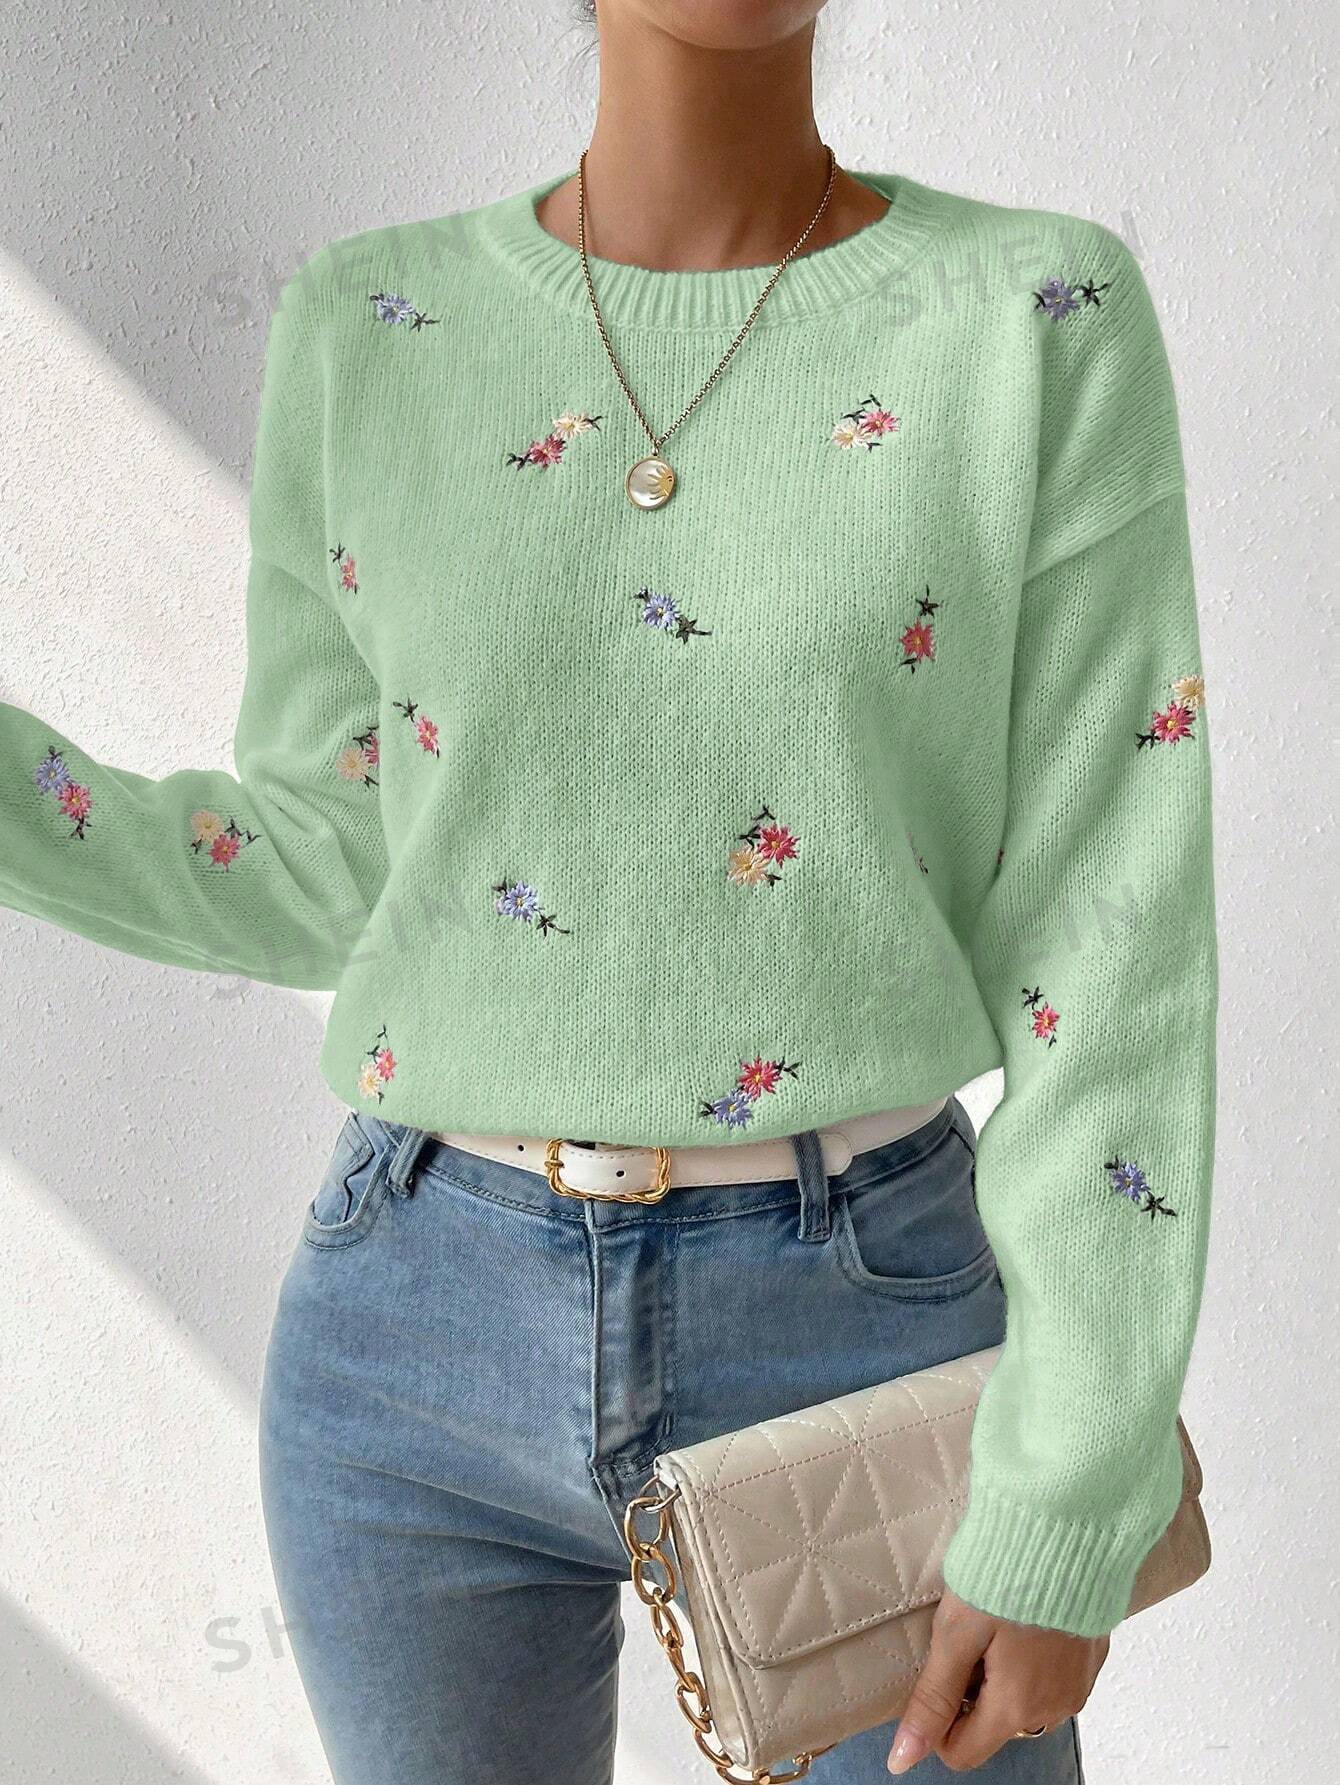 SHEIN Essnce Свитер с круглым вырезом и открытыми плечами с цветочной вышивкой, мятно-зеленый shein essnce однотонный открытый вязаный свитер с заниженными плечами белый